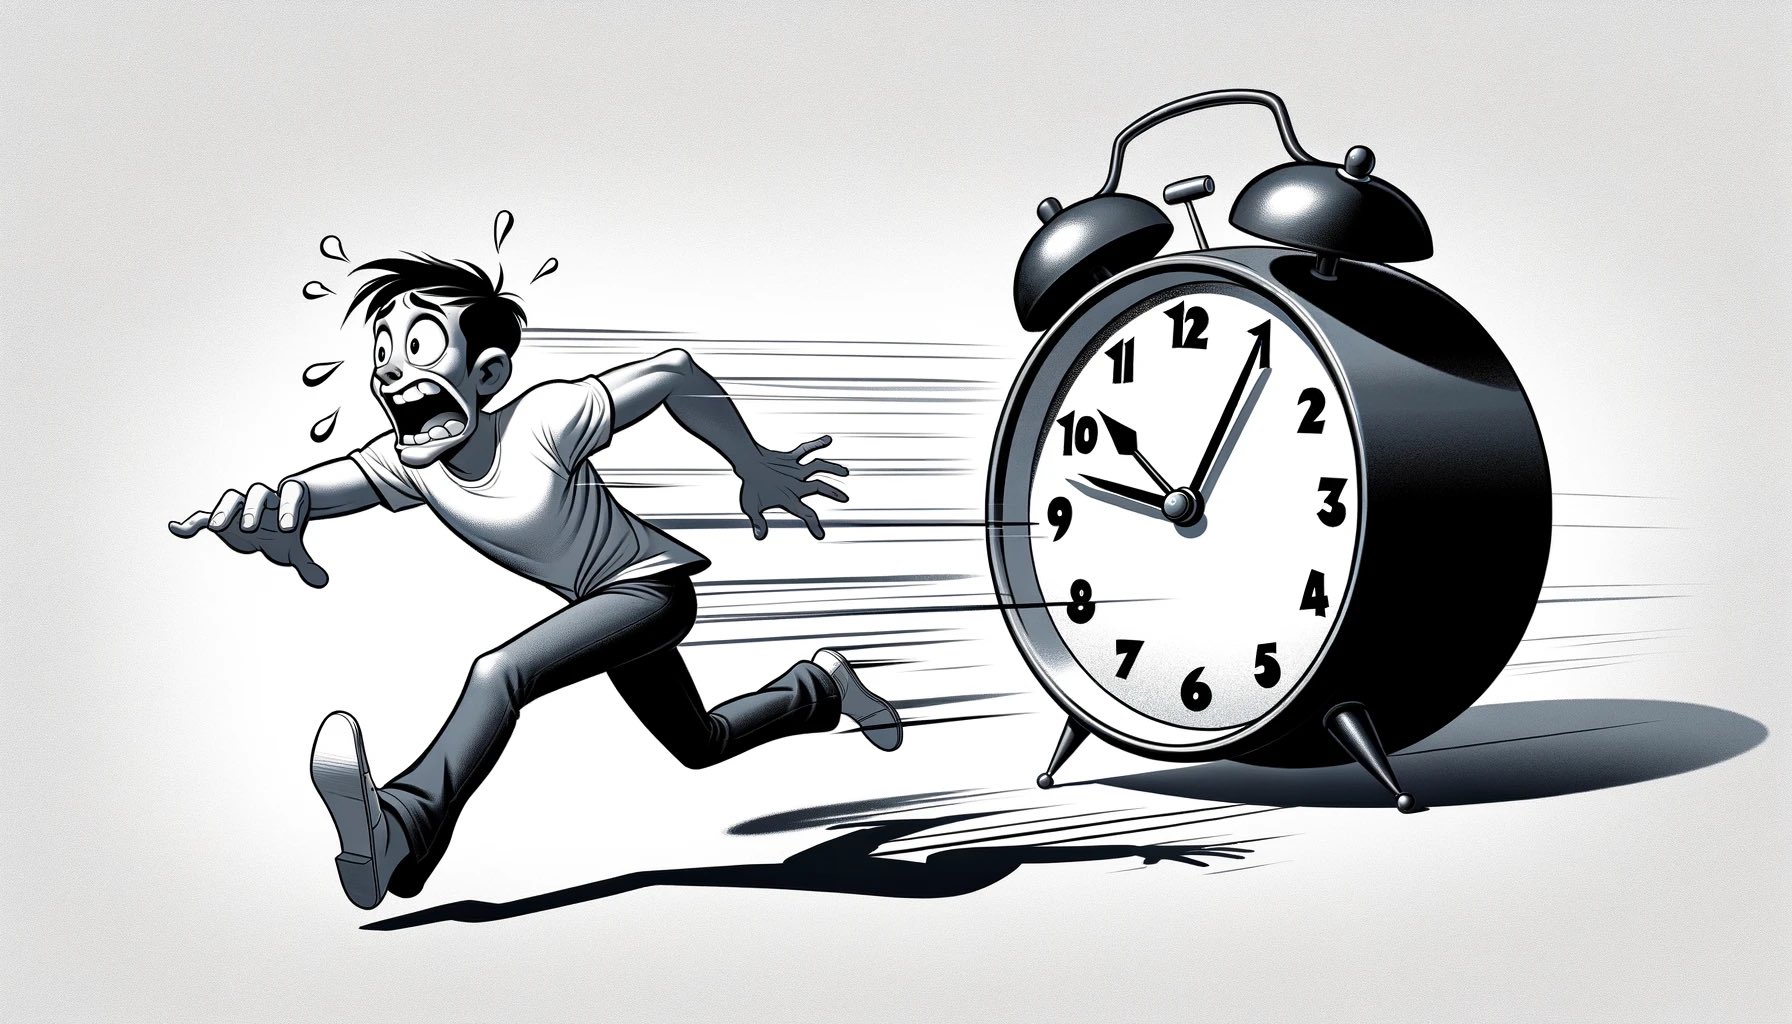 A man running from a clock.